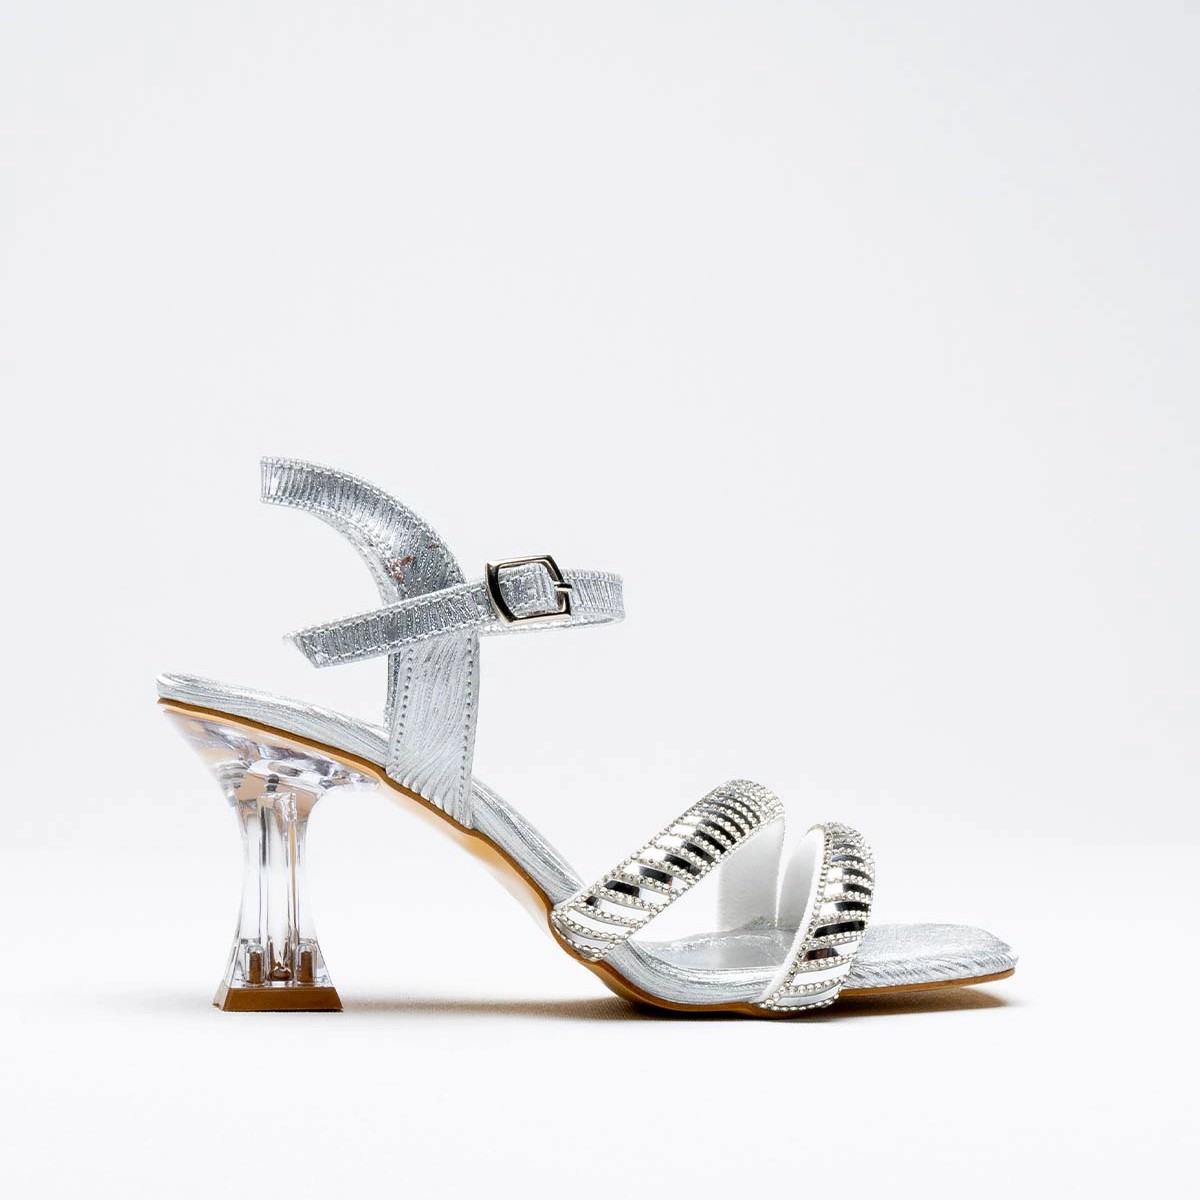 Tekstil Taşlı İnce Topuklu Ayakkabı - Gümüş